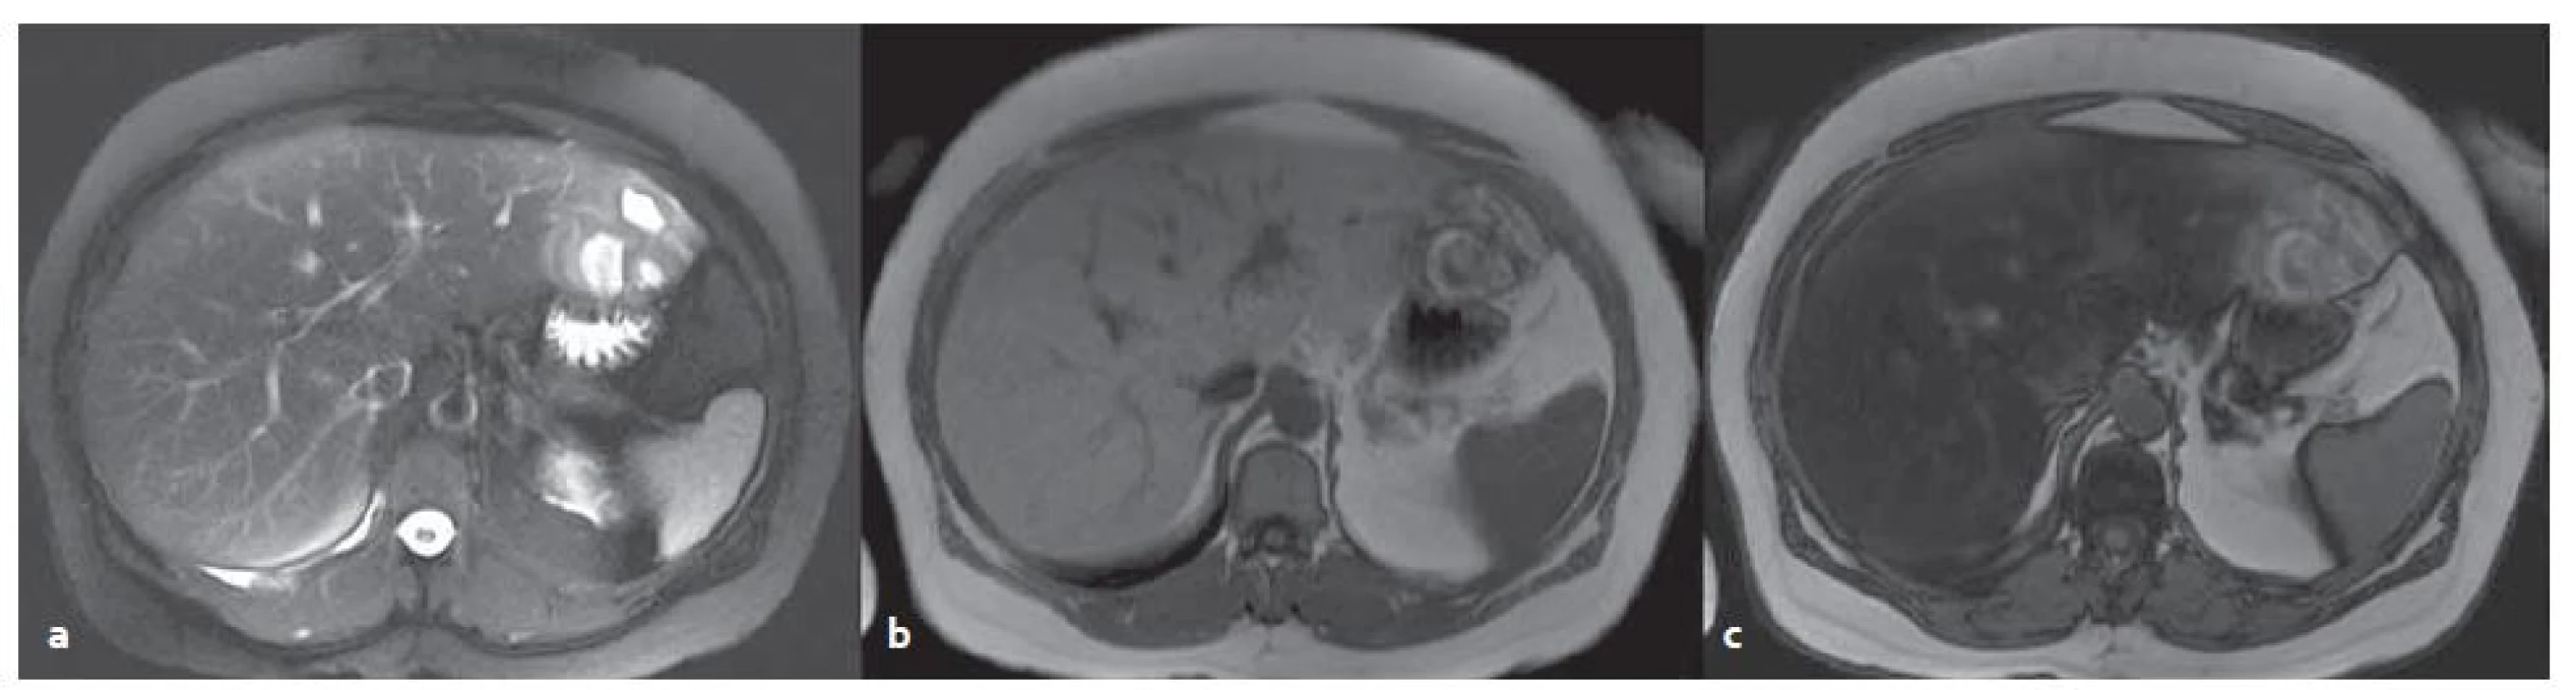 MR vyšetření – blíže nespecifikovaný adenom v levém laloku s okrsky nekróz a krvácení v terénu steatózy. T2W tra haste 2D trig bez potlačení tuku (a), v T1W ge 2D in (b), opp (c) – dobře patrná změna signálu jater při steatóze.
Fig. 6. MR examination – unclassified adenoma in the left lobe of steatotic liver with necrosis and bleeding. T2W tra haste 2D trig without fat suppression (a) in TW1 ge 2D in (b), opp (c) – change of the signal in steatosis is evident.